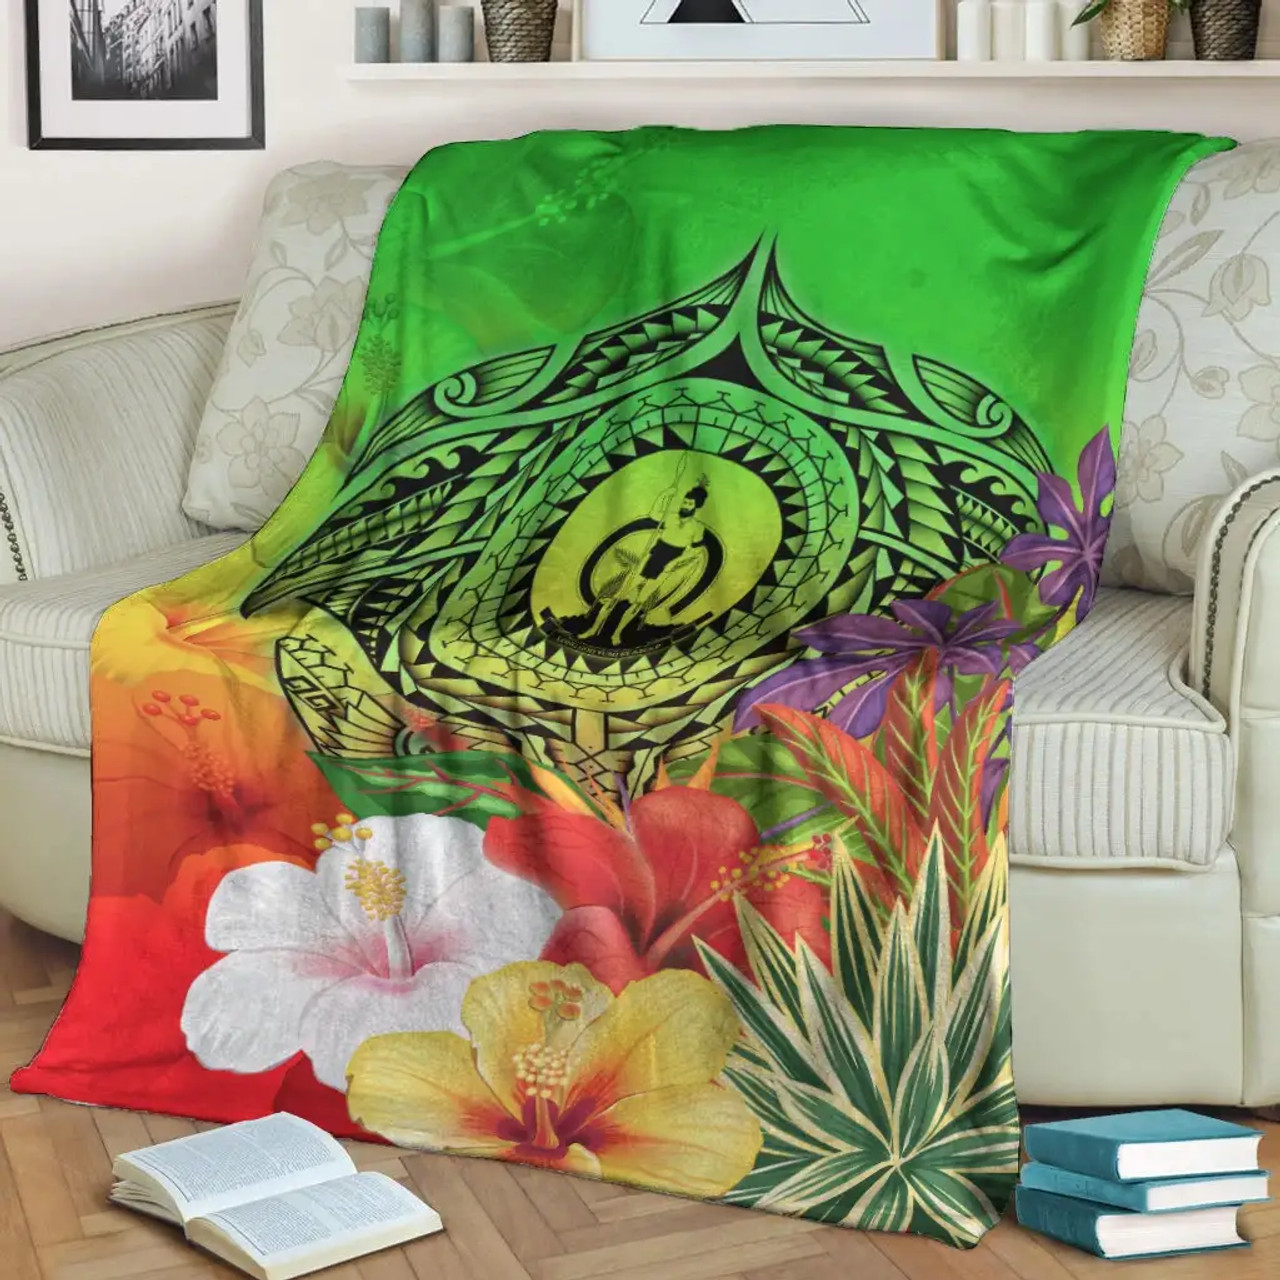 Vanuatu Premium Blanket - Manta Ray Tropical Flowers (Green) 3